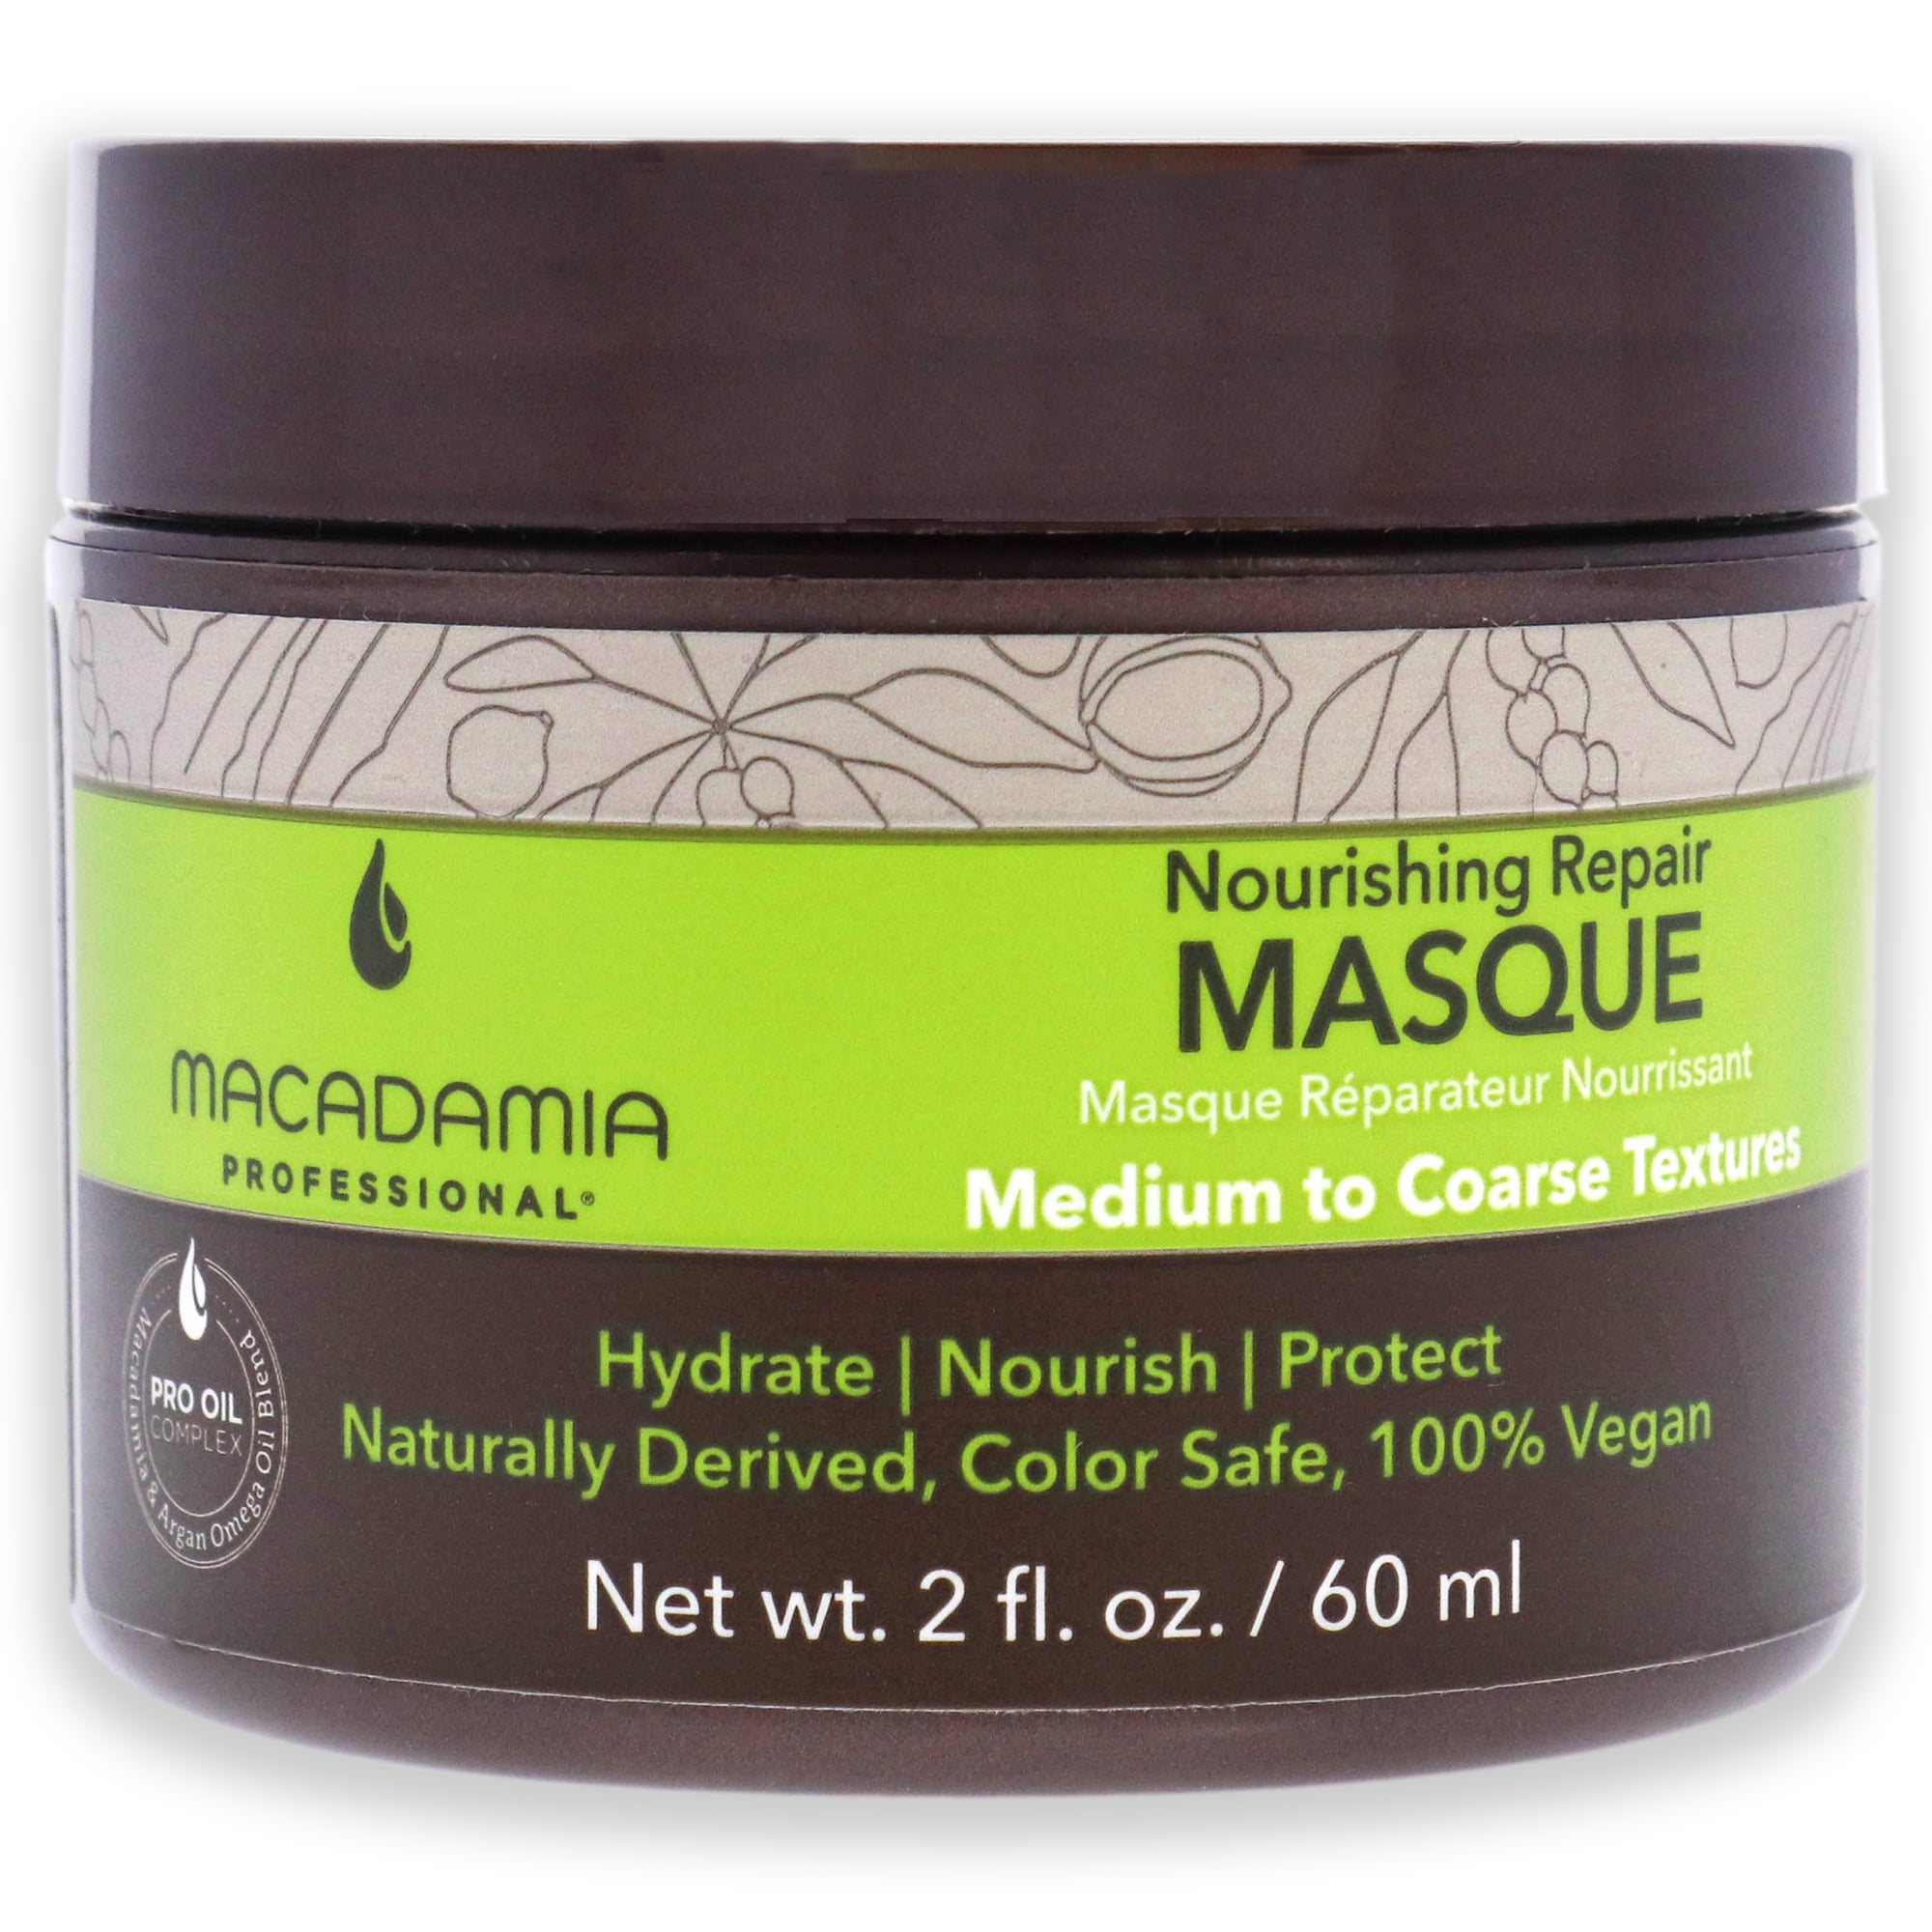 Nourishing Repair Masque by Macadamia Oil for Unisex - 2 oz Masque